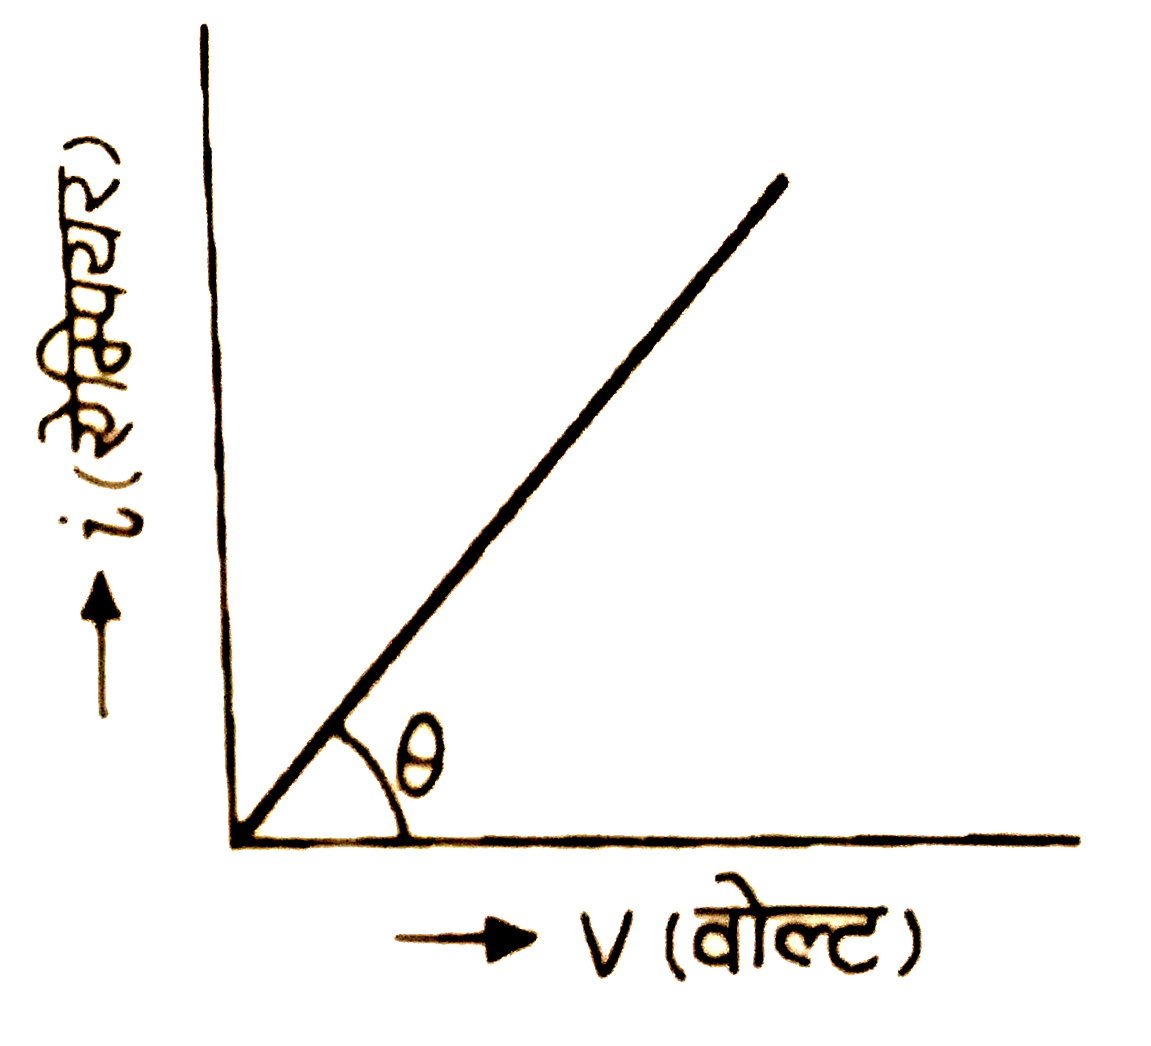 चित्र  में किसी  चालक  में बहने  वाली  धारा i  तथा  उसके  सिरों  पर  लगाए   गए विभवान्तर  v  को  ग्राफ  द्वारा  प्रदर्शित  किया  गया  है  । चालक  का  प्रतिरोध  , कोण  theta    के  व्यंजक  में  कितना  होगा  ?